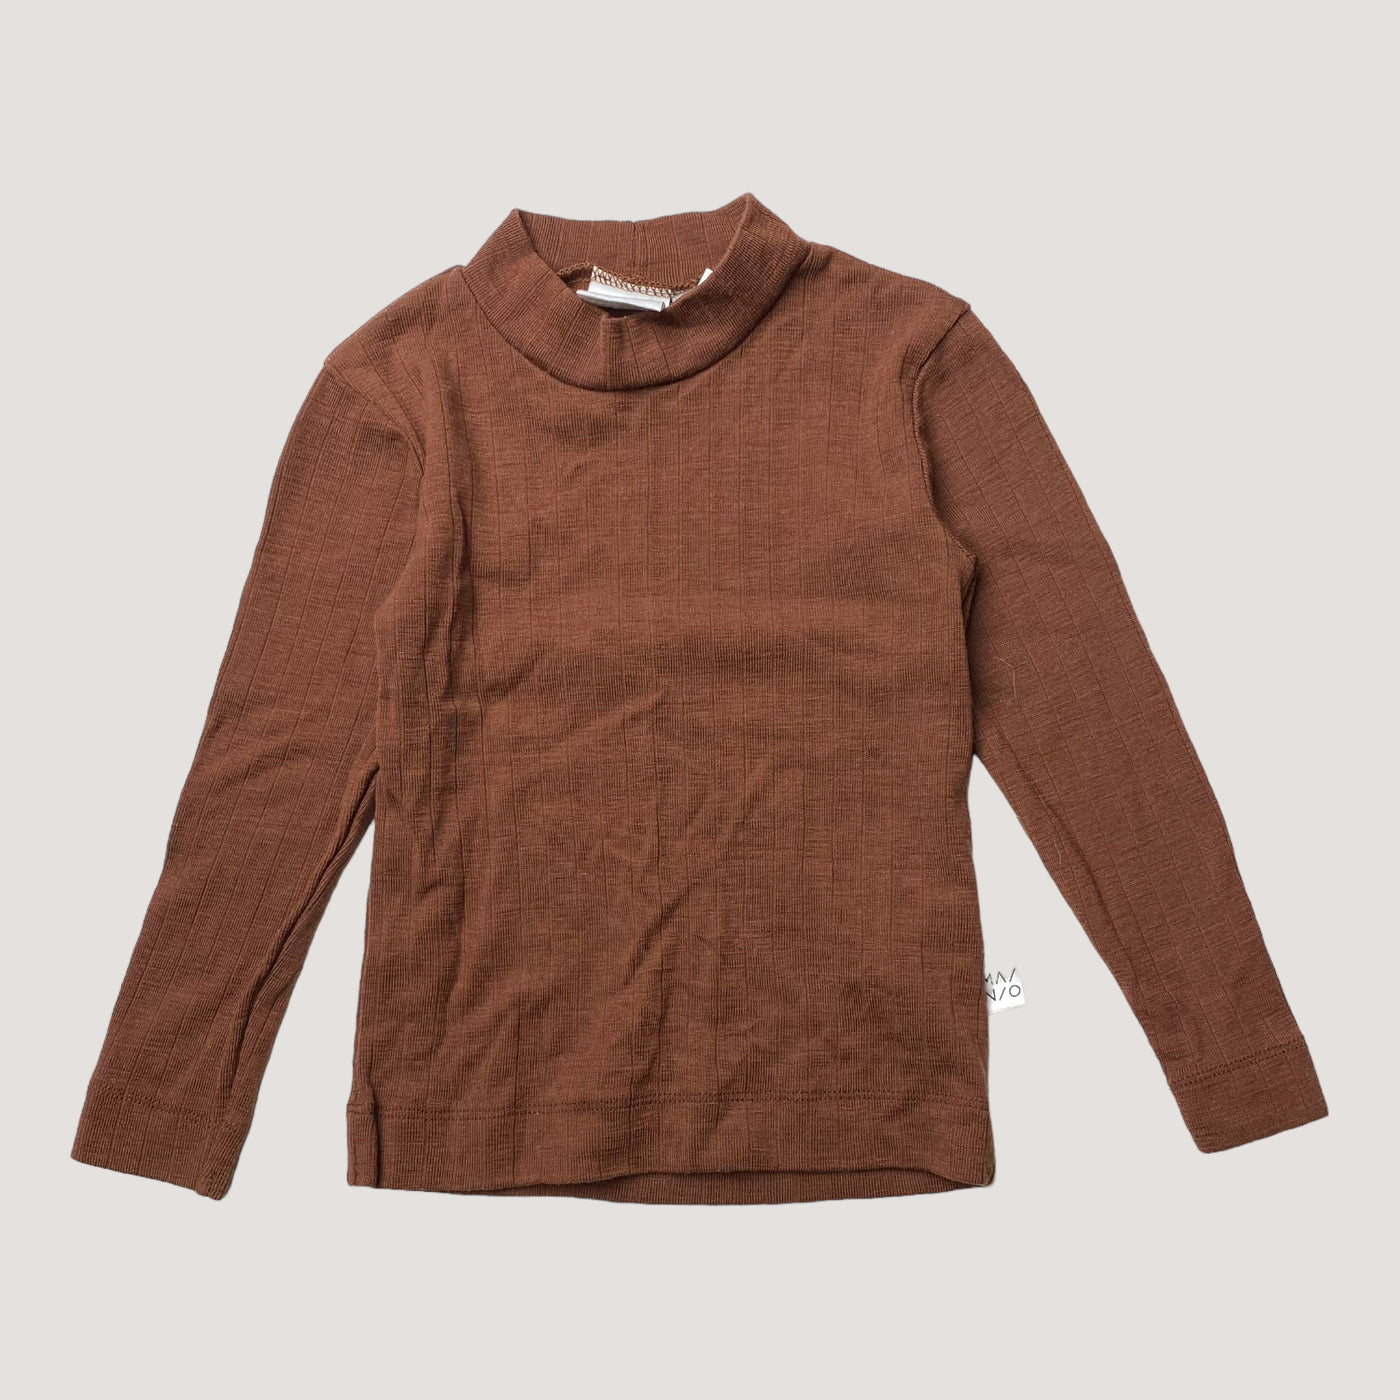 Mainio merino wool shirt, chocolate | 86/92cm